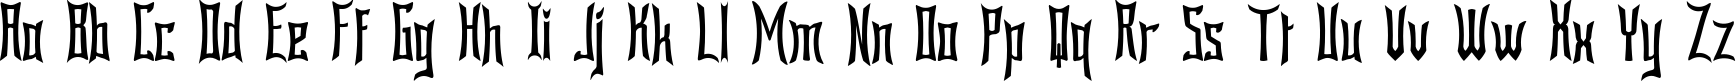 Пример написания английского алфавита шрифтом Bardour